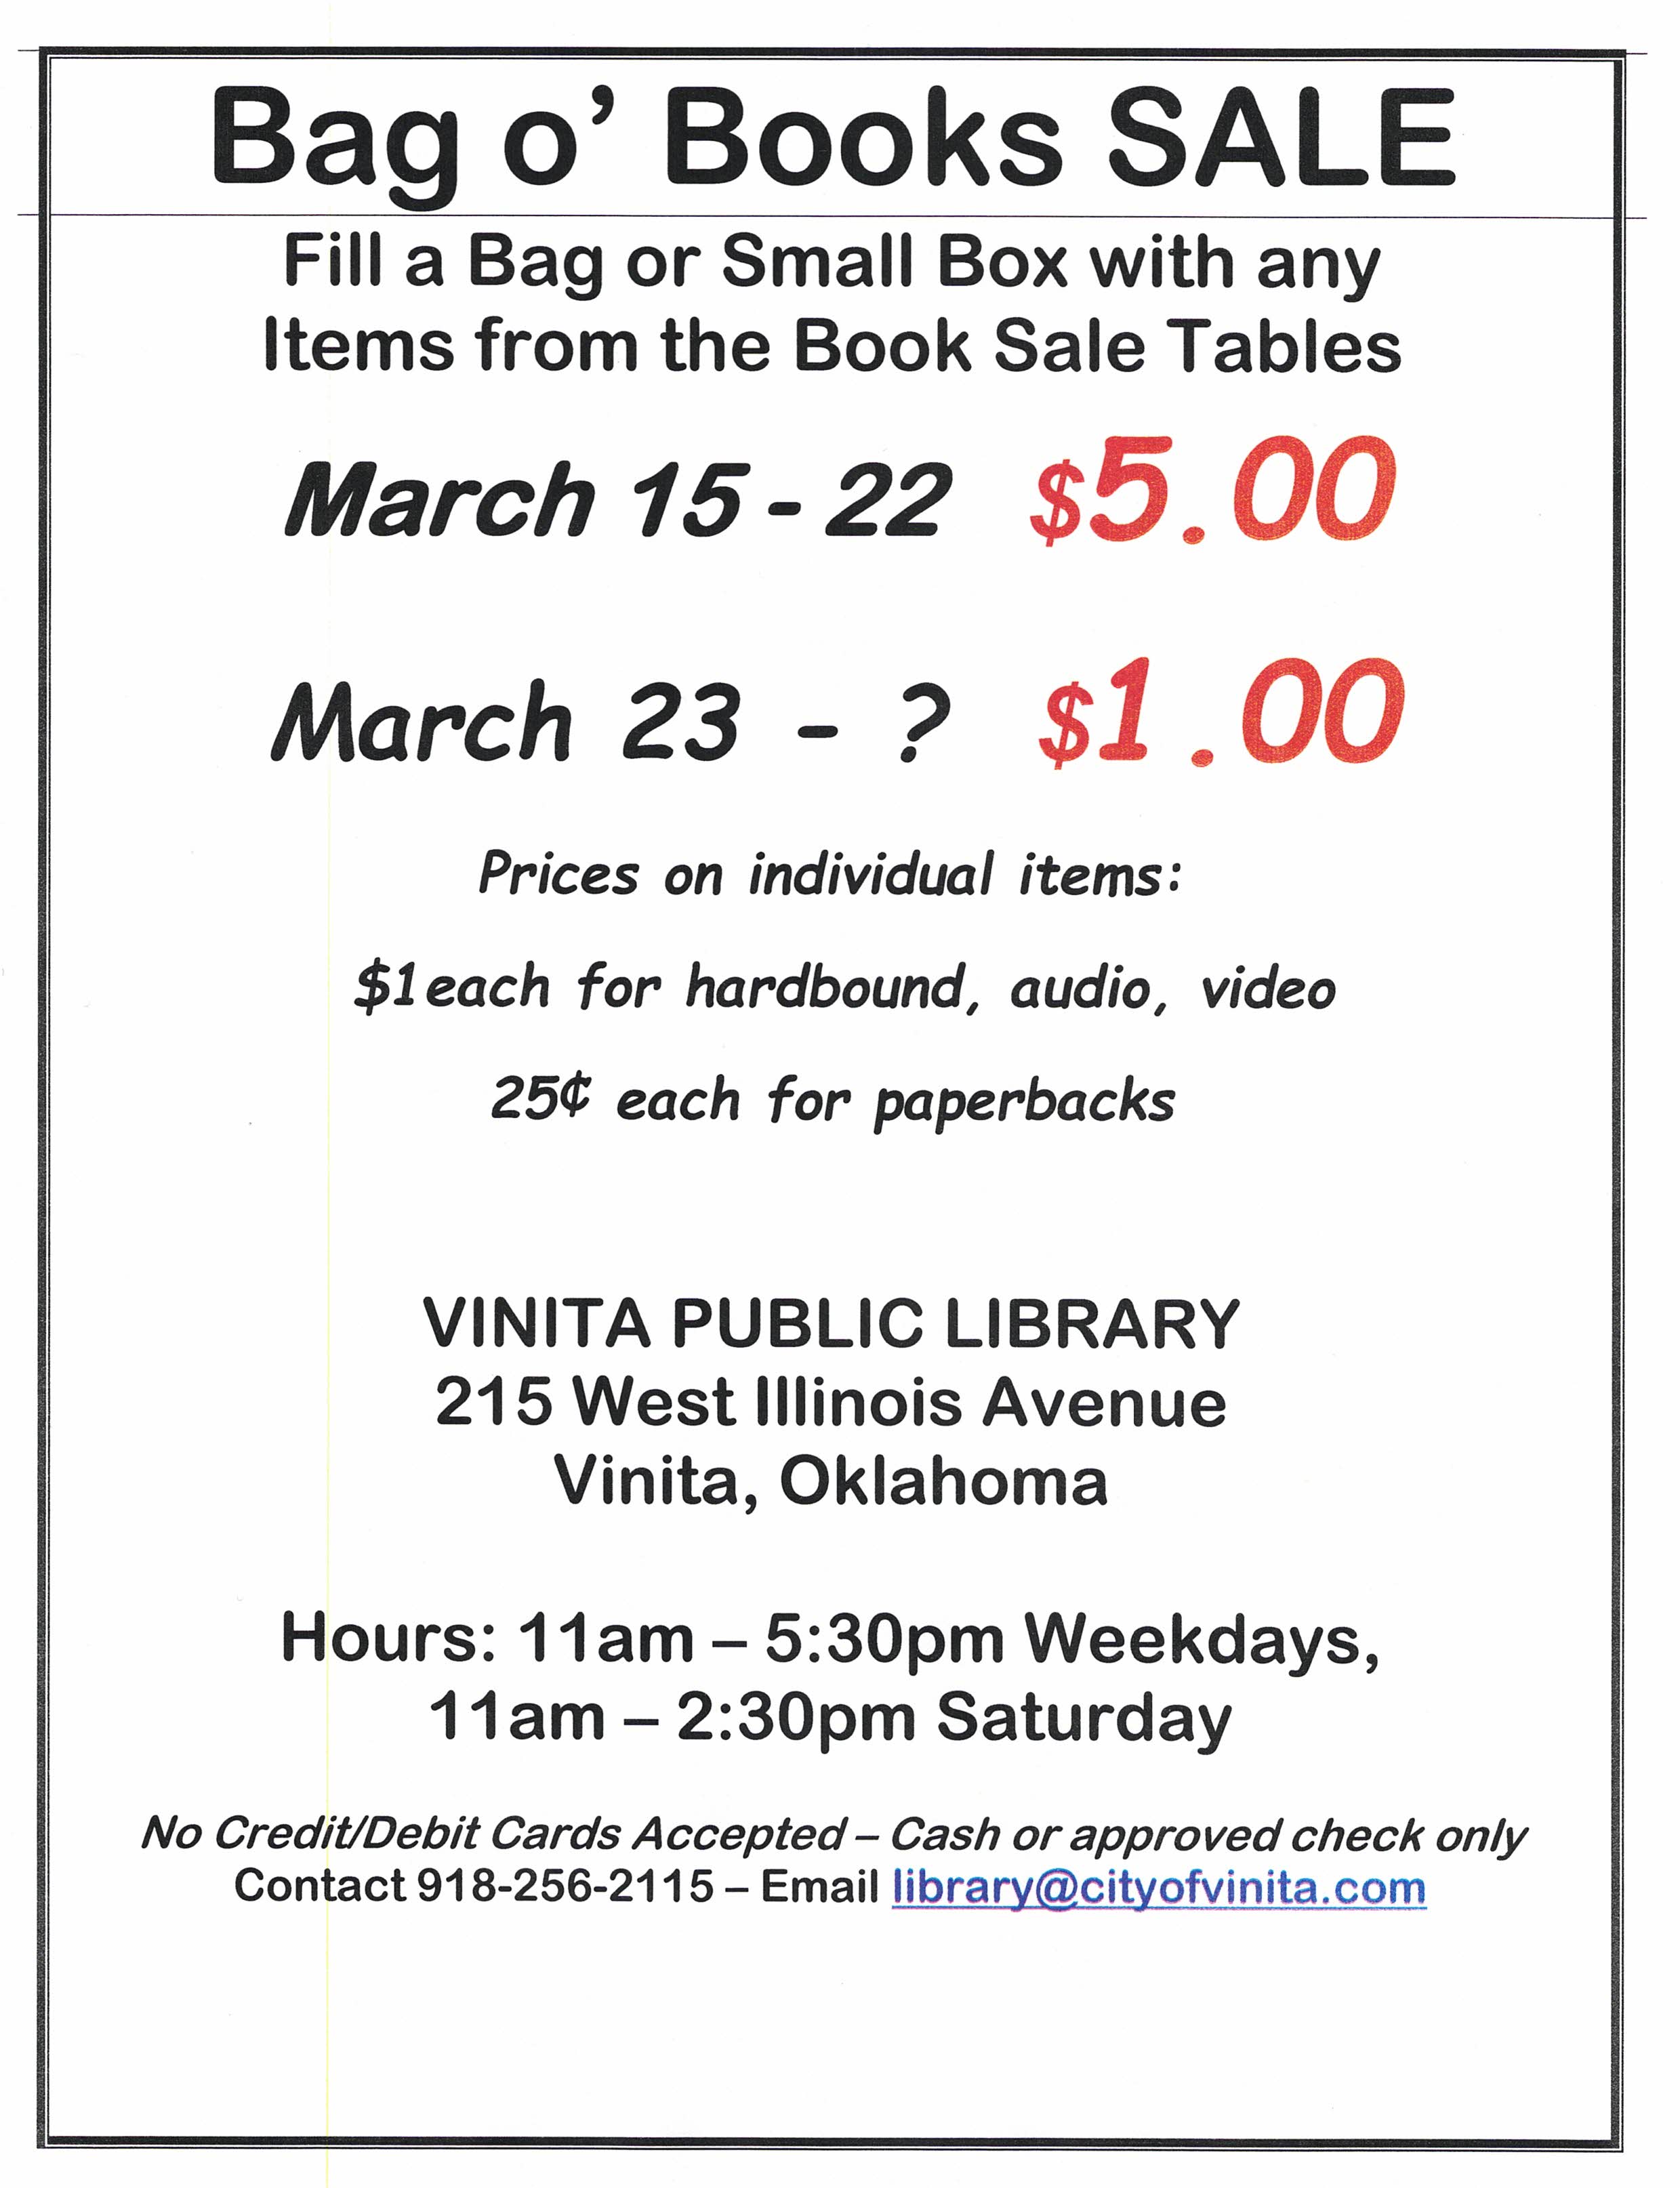 Spring Book Sale starts March 15th! – Vinita Public Library